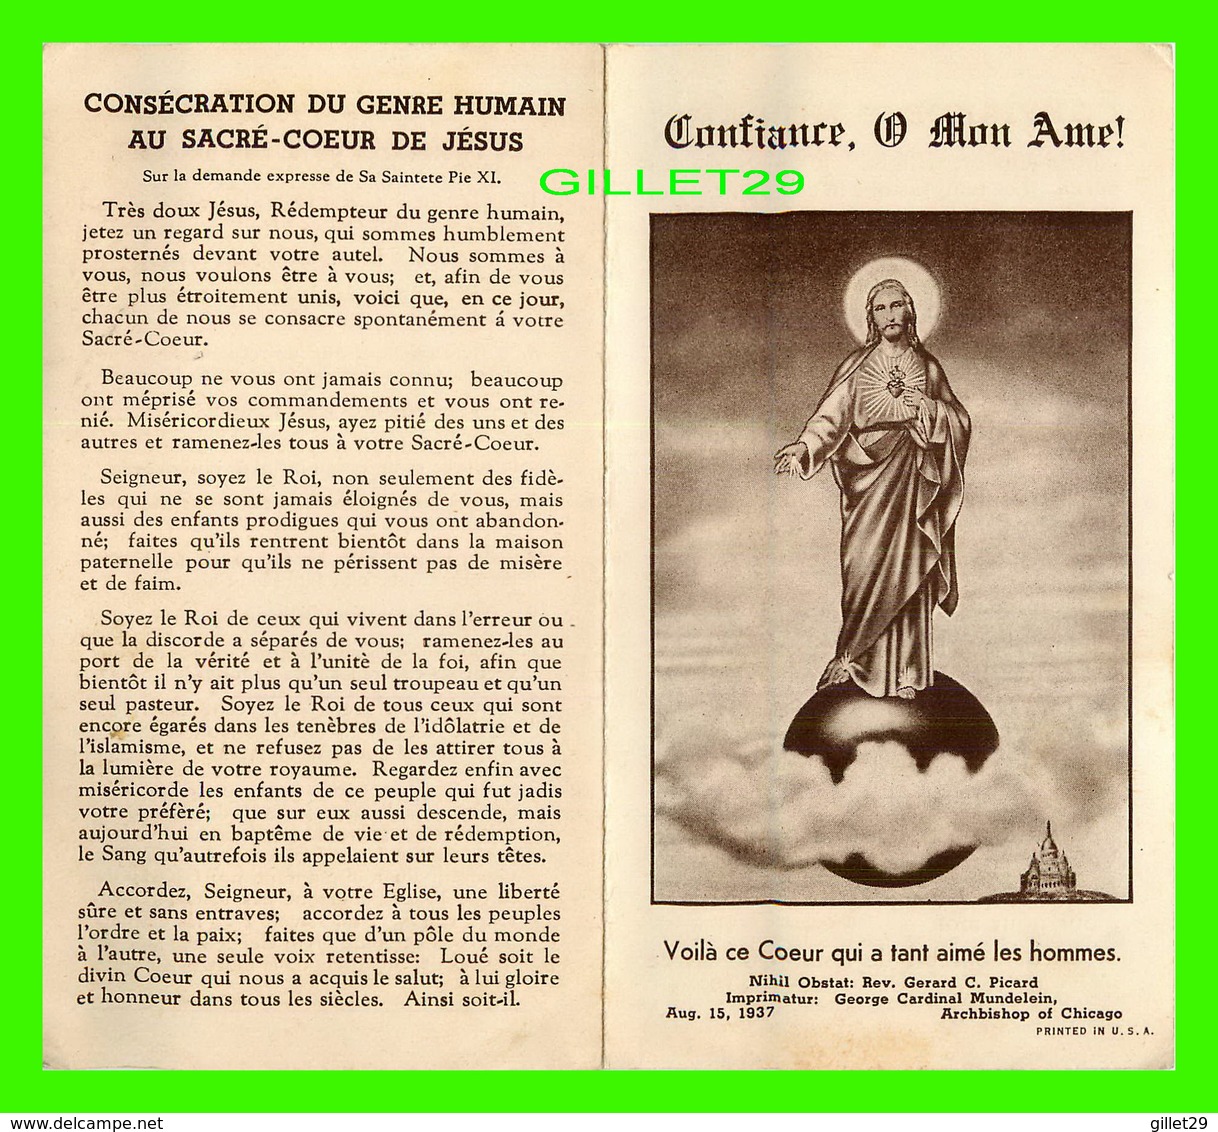 RELIGIONS - CONSÉCRATION DU GENRE HUMAIN AU SACRÉ-CŒUR DE JÉSUS EN 1937 - 4 PAGES - - Jésus